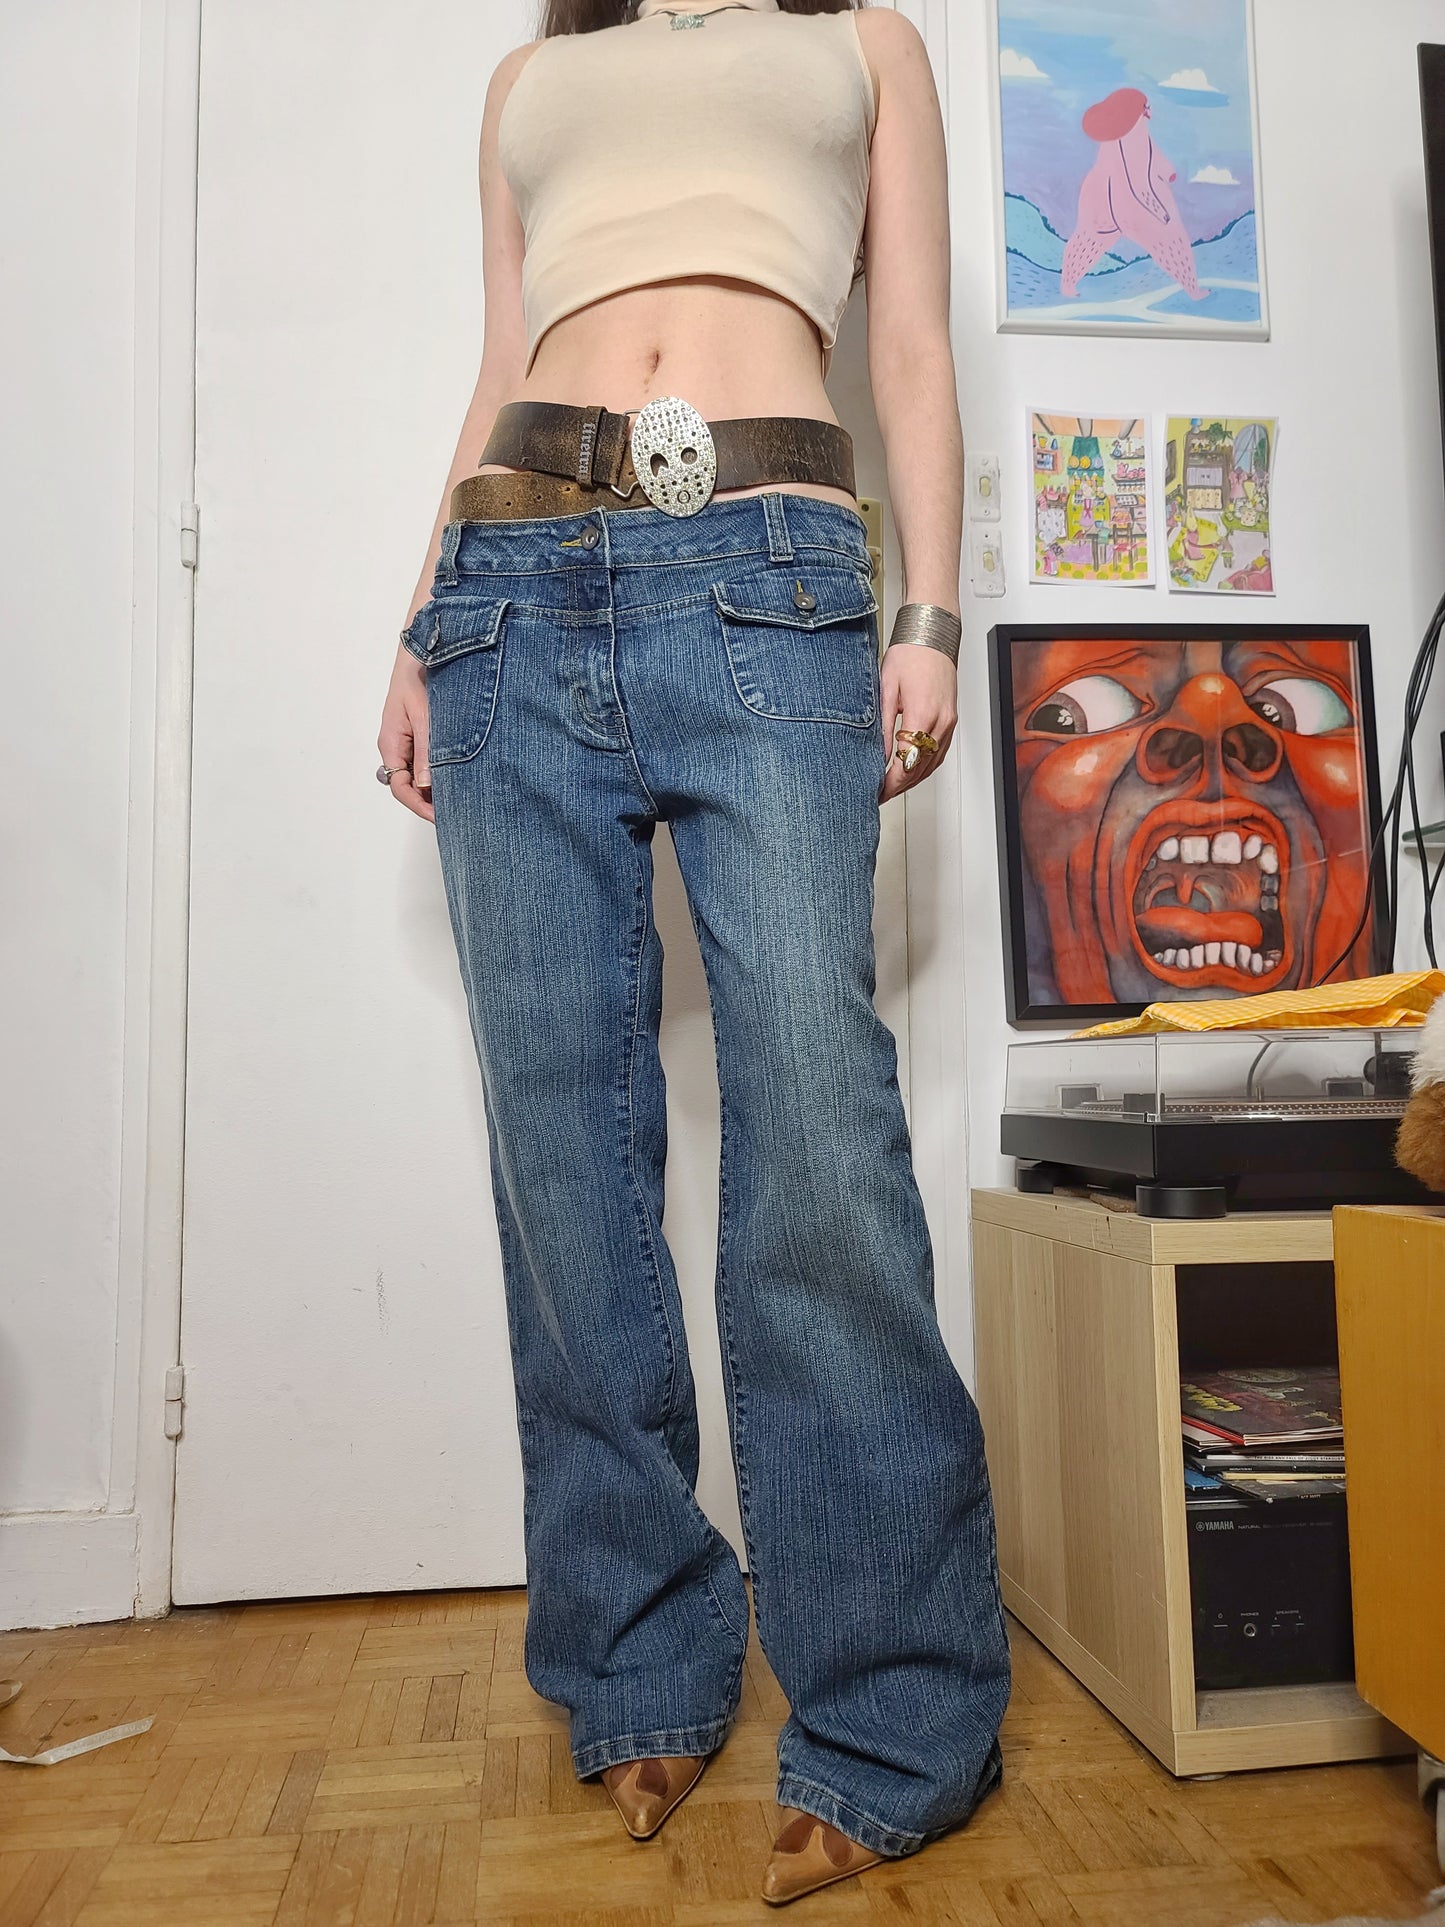 90s grunge denim overpants